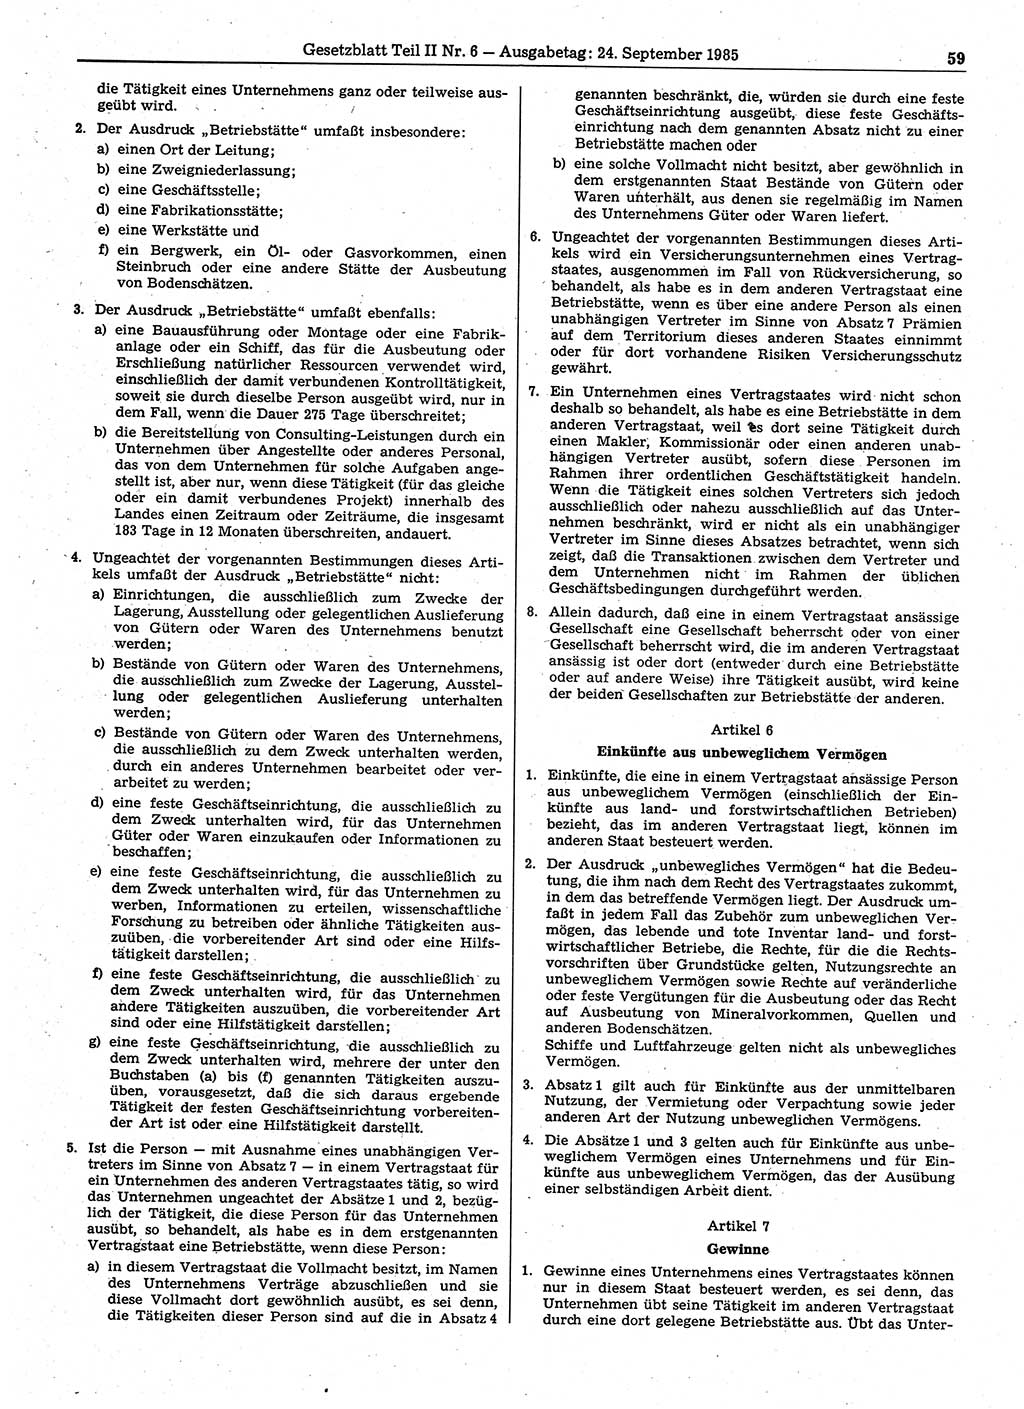 Gesetzblatt (GBl.) der Deutschen Demokratischen Republik (DDR) Teil ⅠⅠ 1985, Seite 59 (GBl. DDR ⅠⅠ 1985, S. 59)